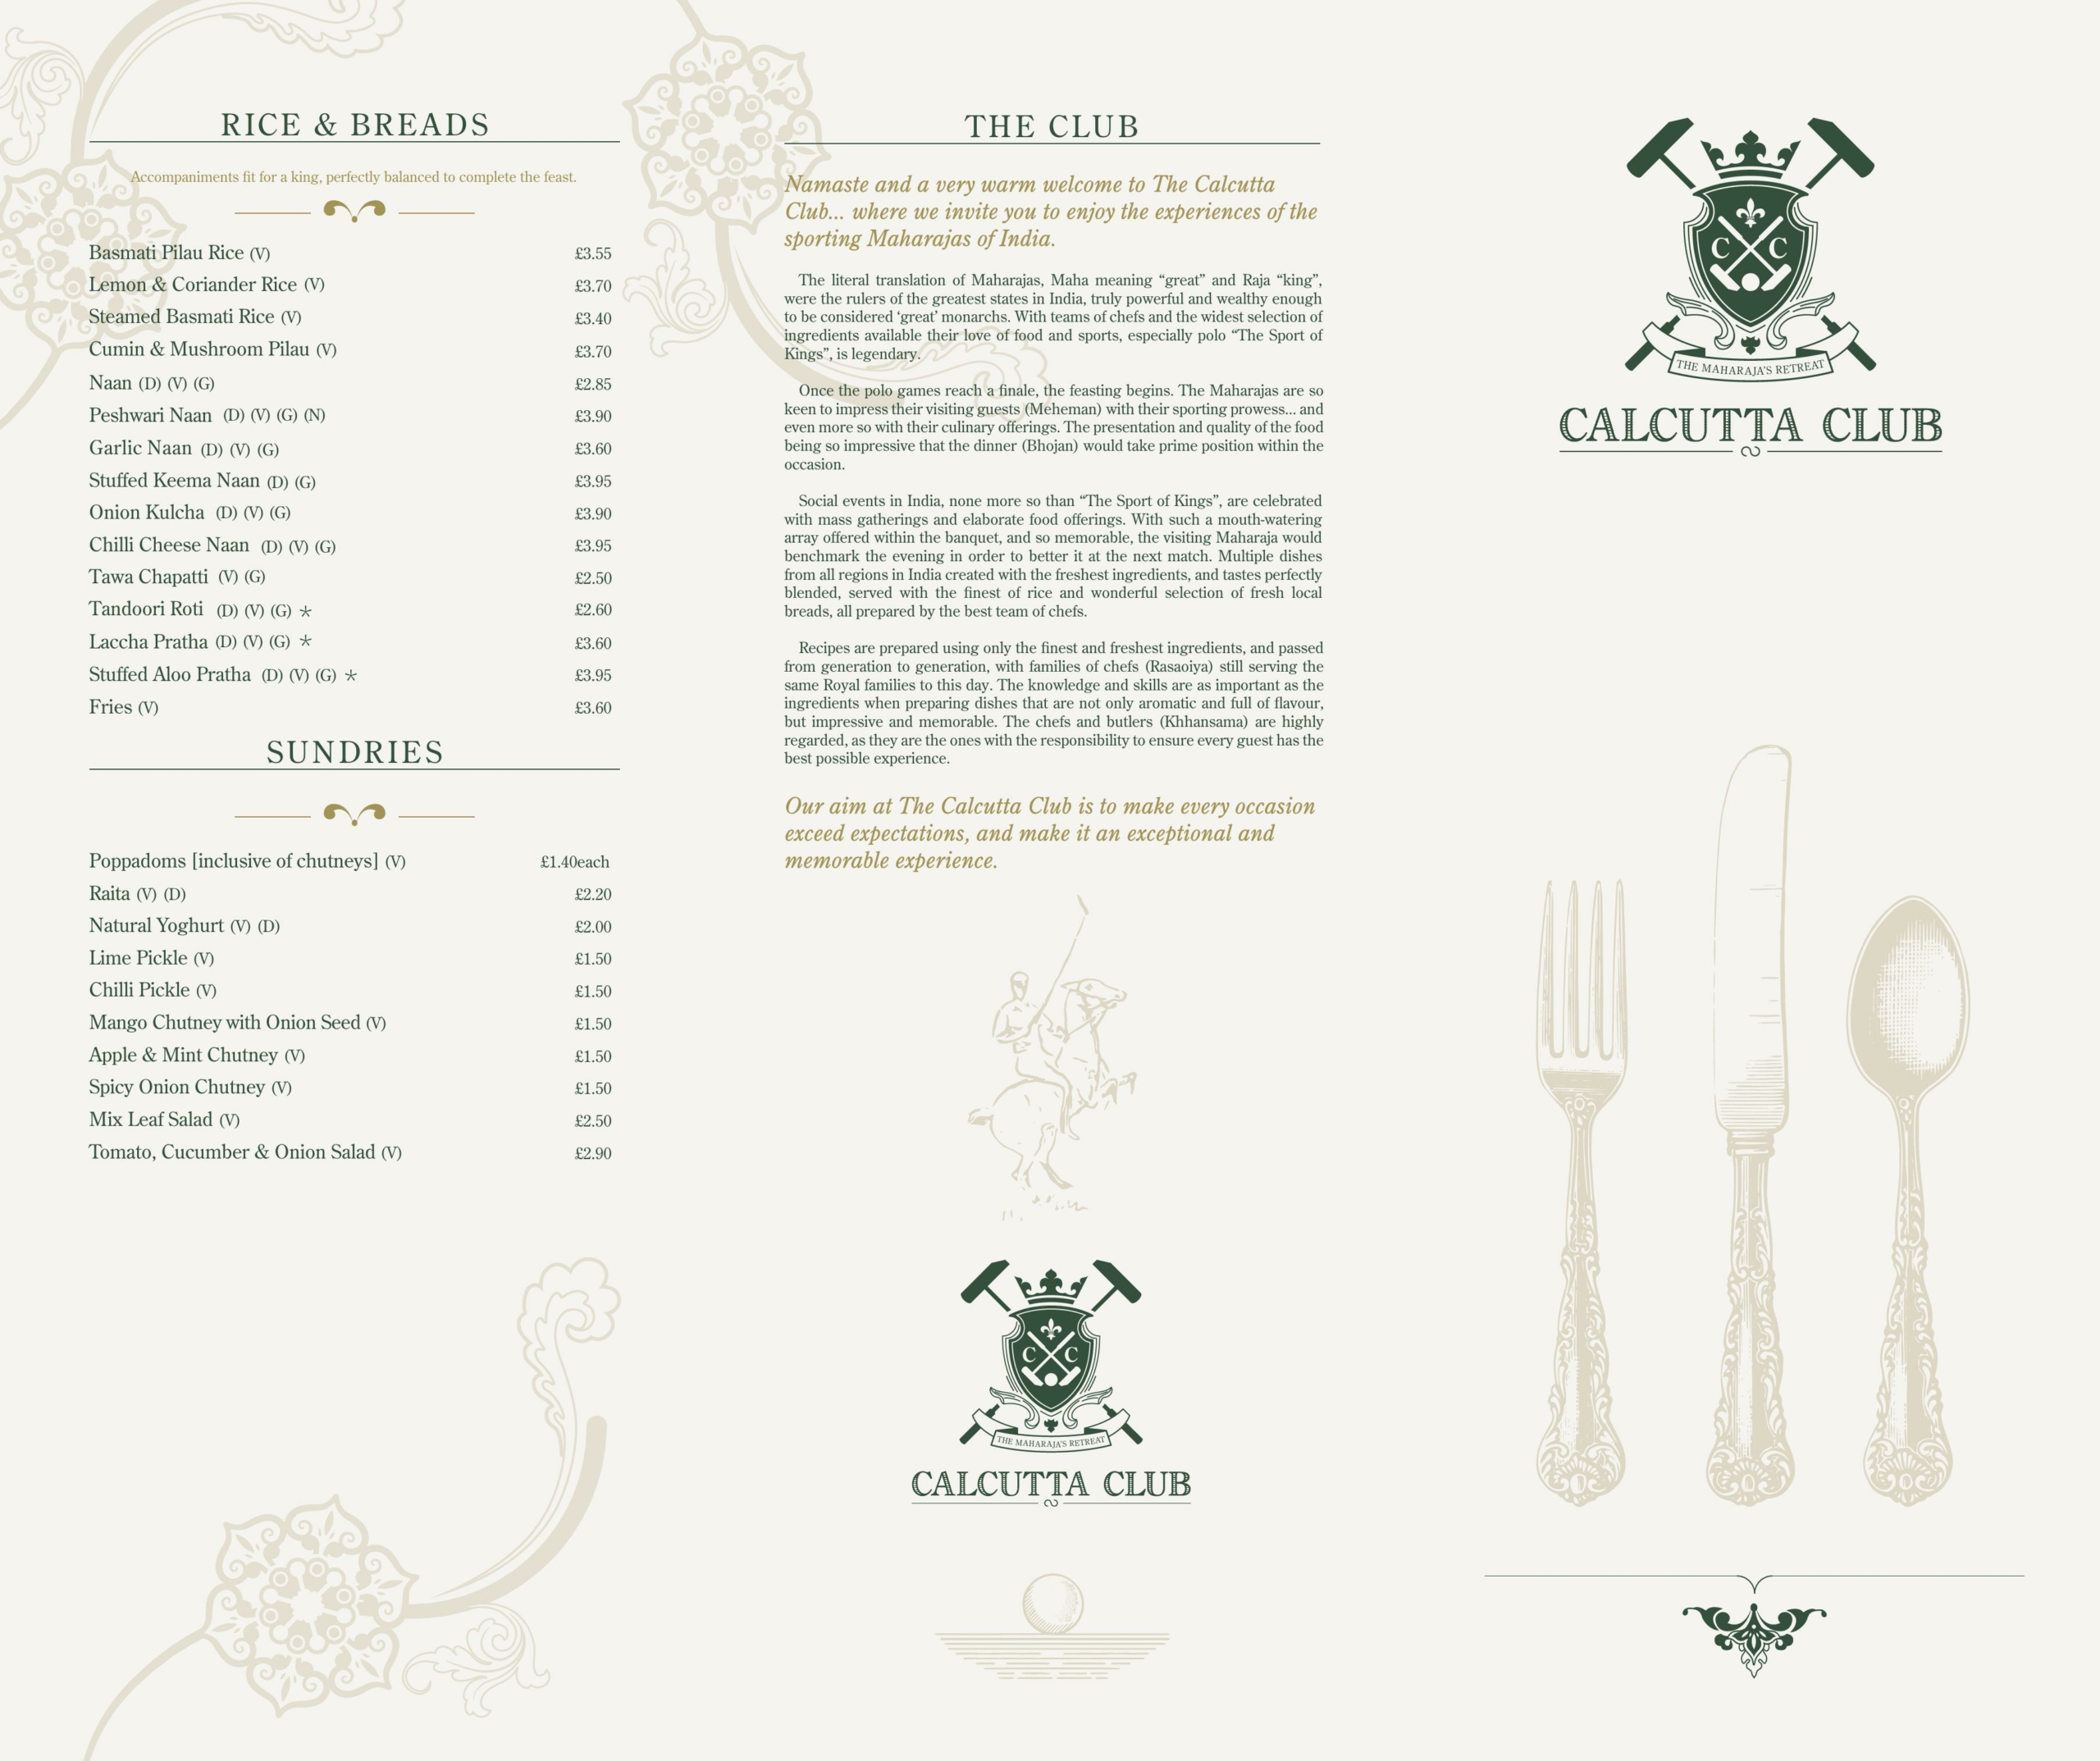 Calcutta Club Indian cuisine - main menu